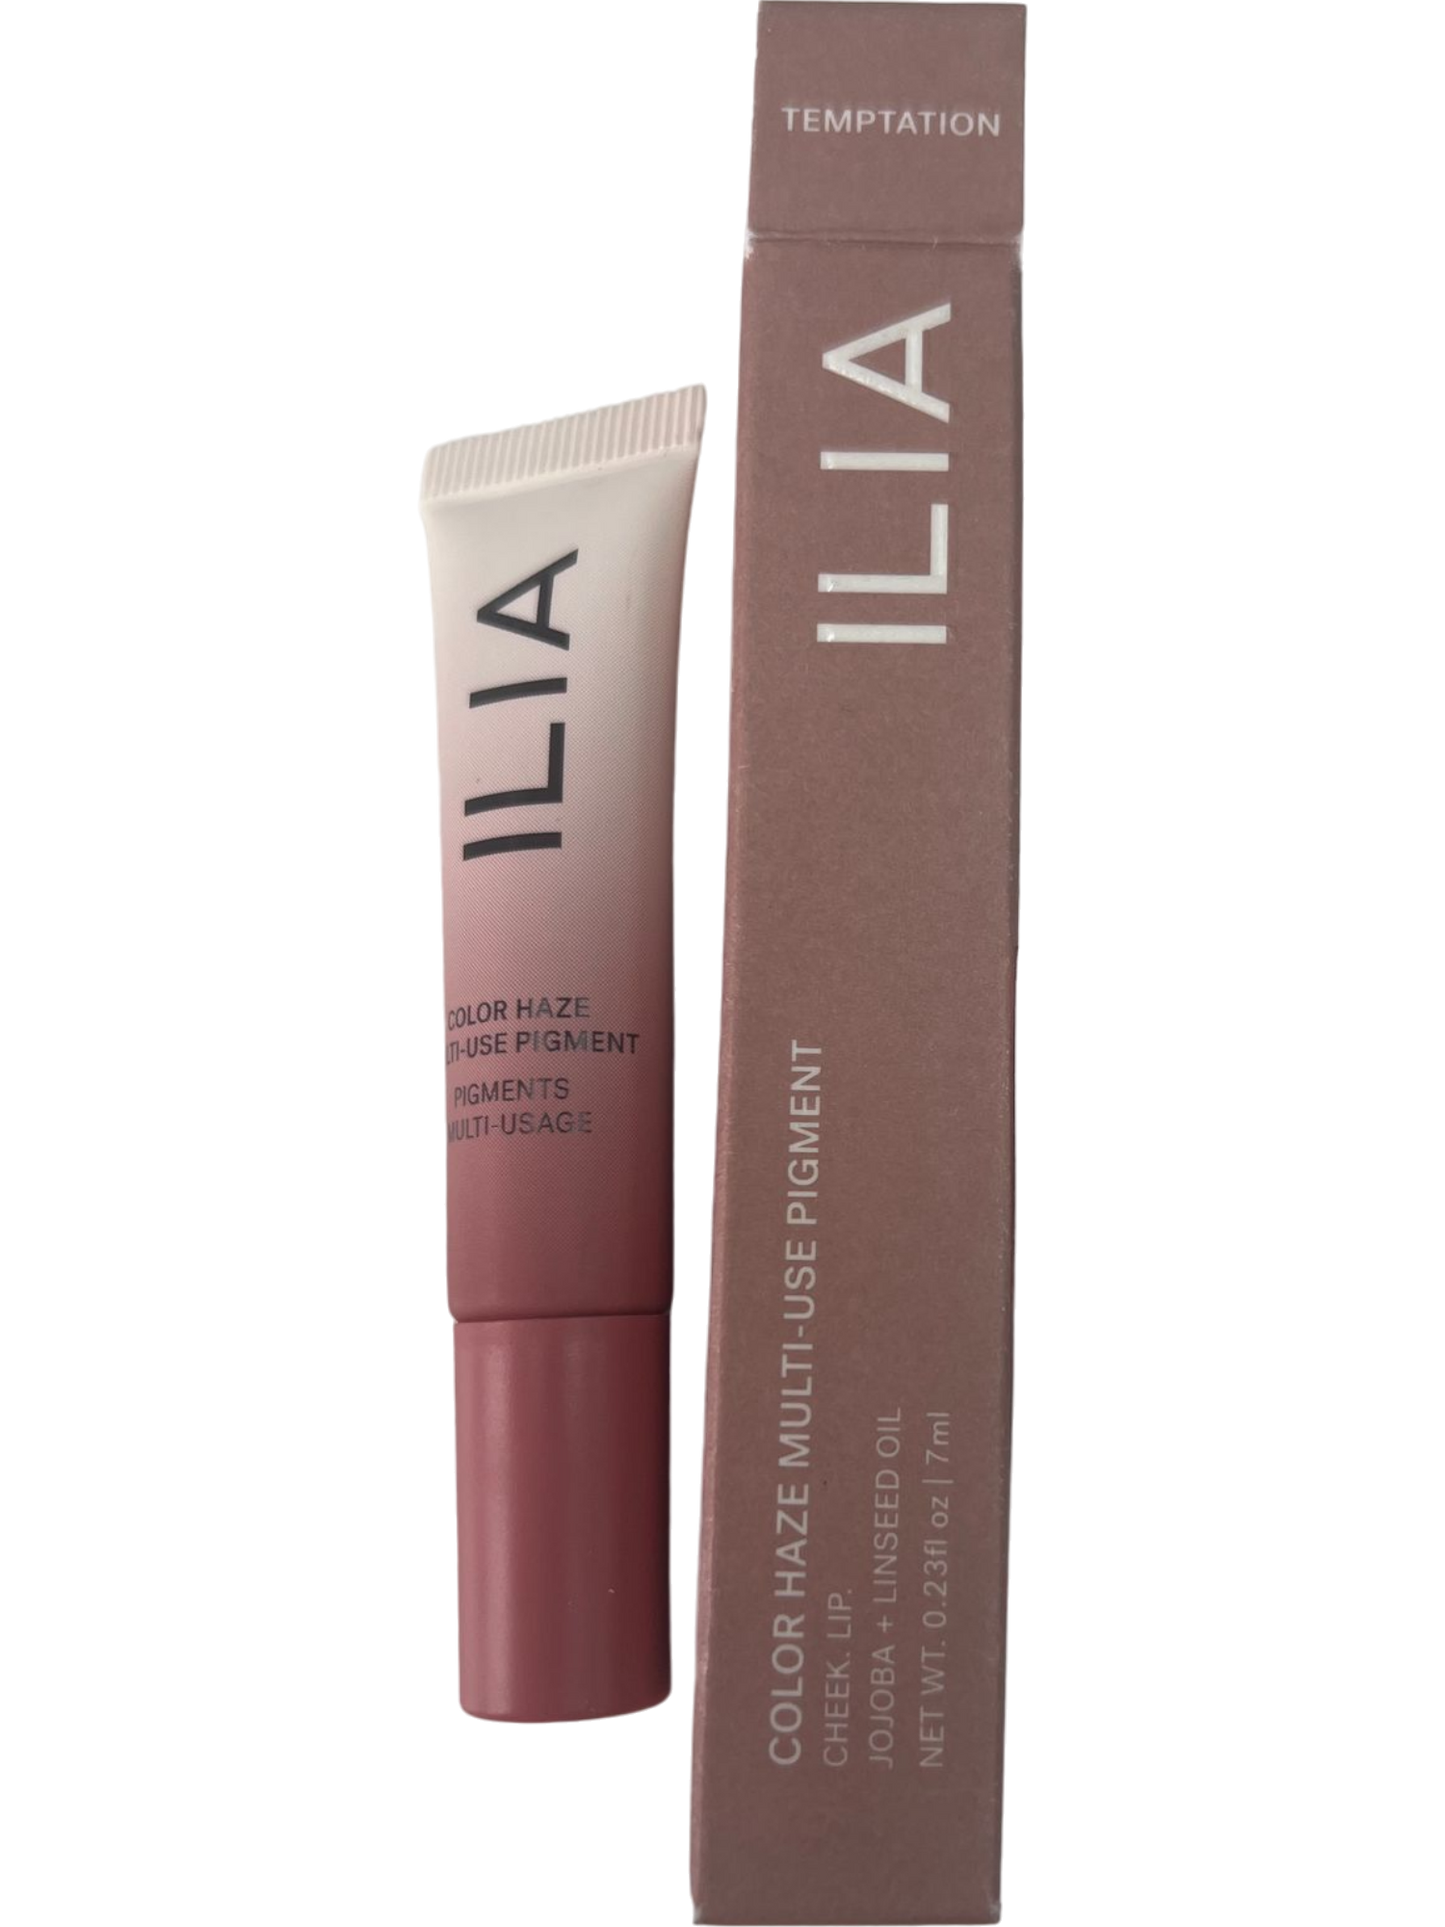 ILIA Beauty Temptation Colour Haze Multi-Matte Pigment